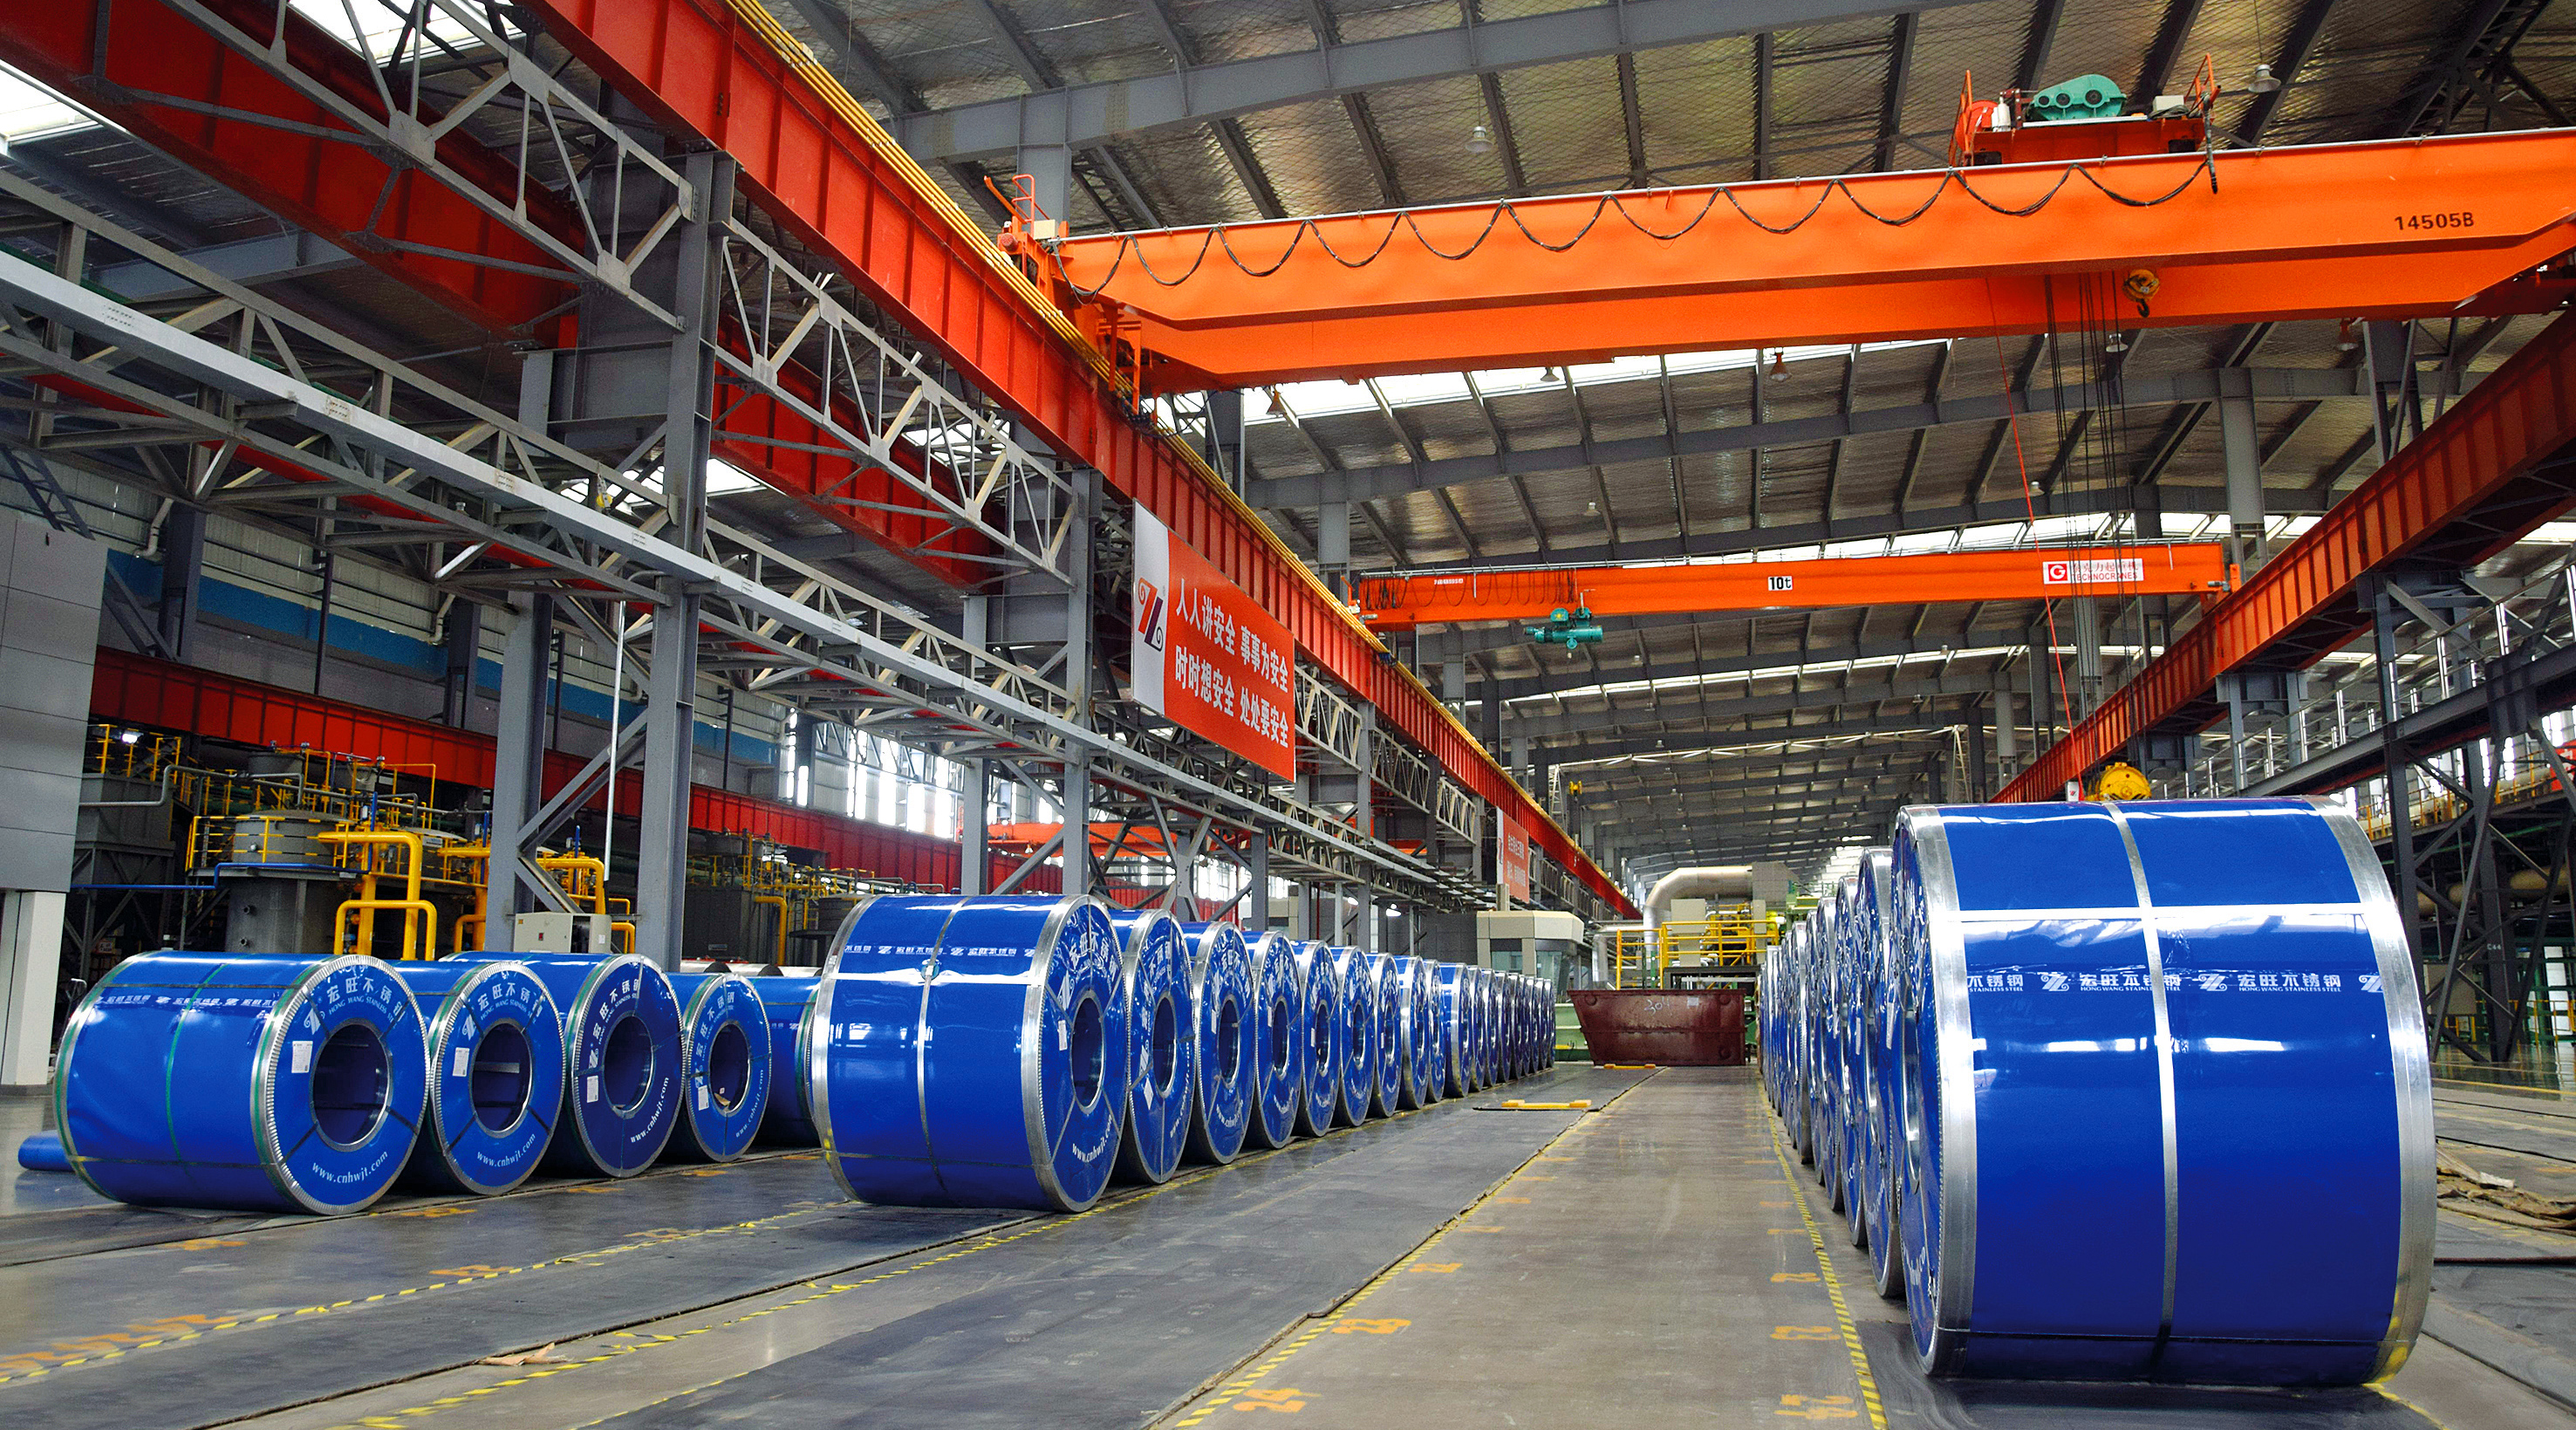 上海期货交易所全球首批不锈钢期货仓单交割品产自山东宏旺